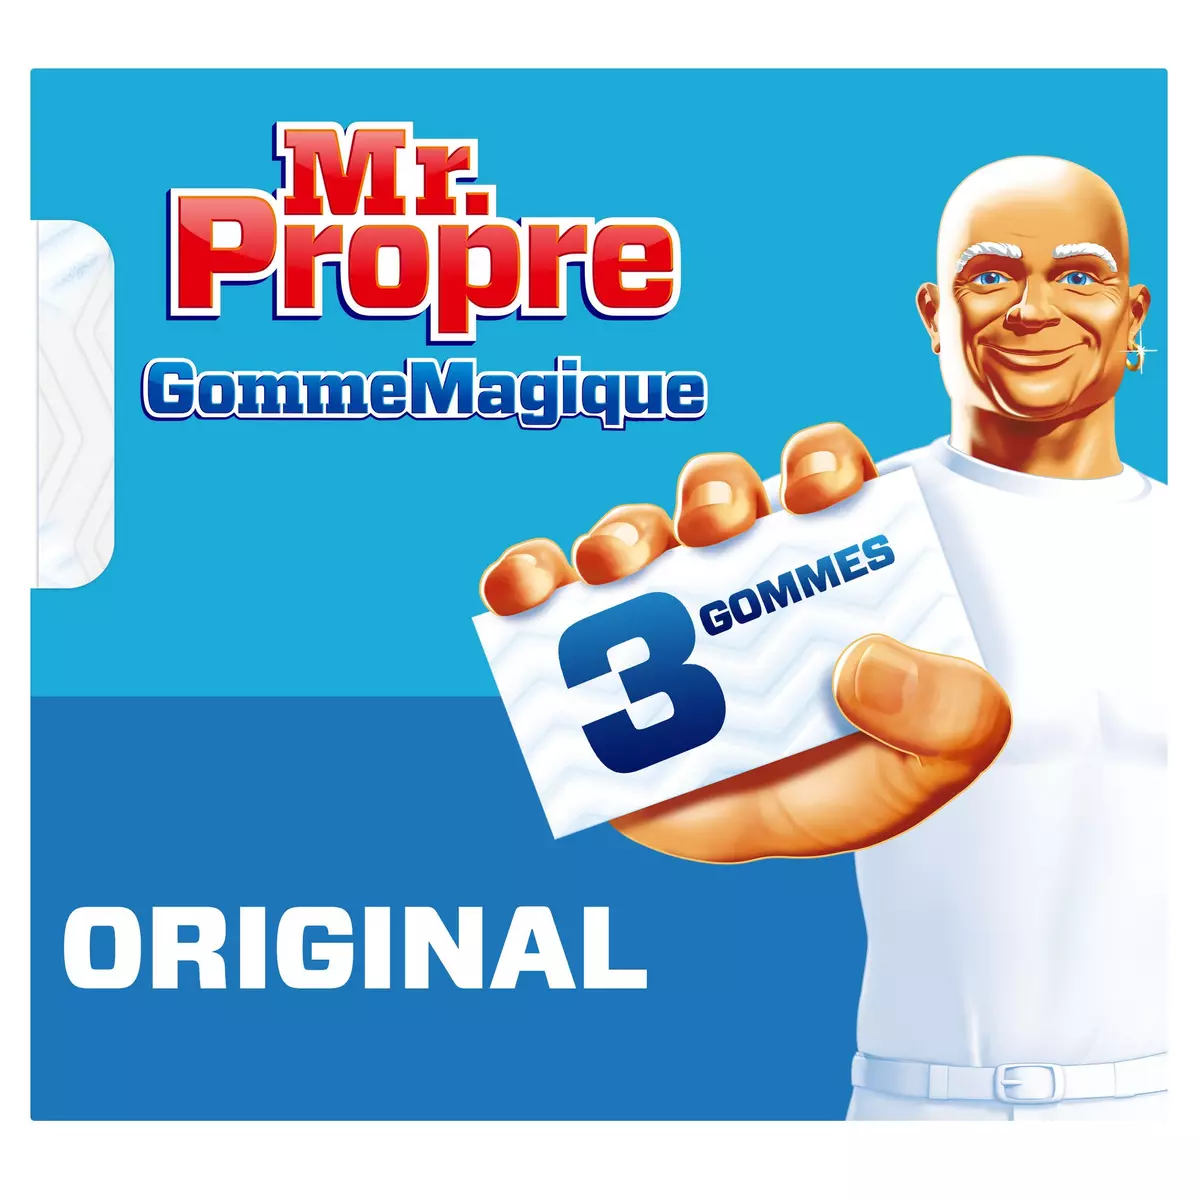 Achat / Vente Mr Propre Gomme Magique Original nettoyante, 3 pièces